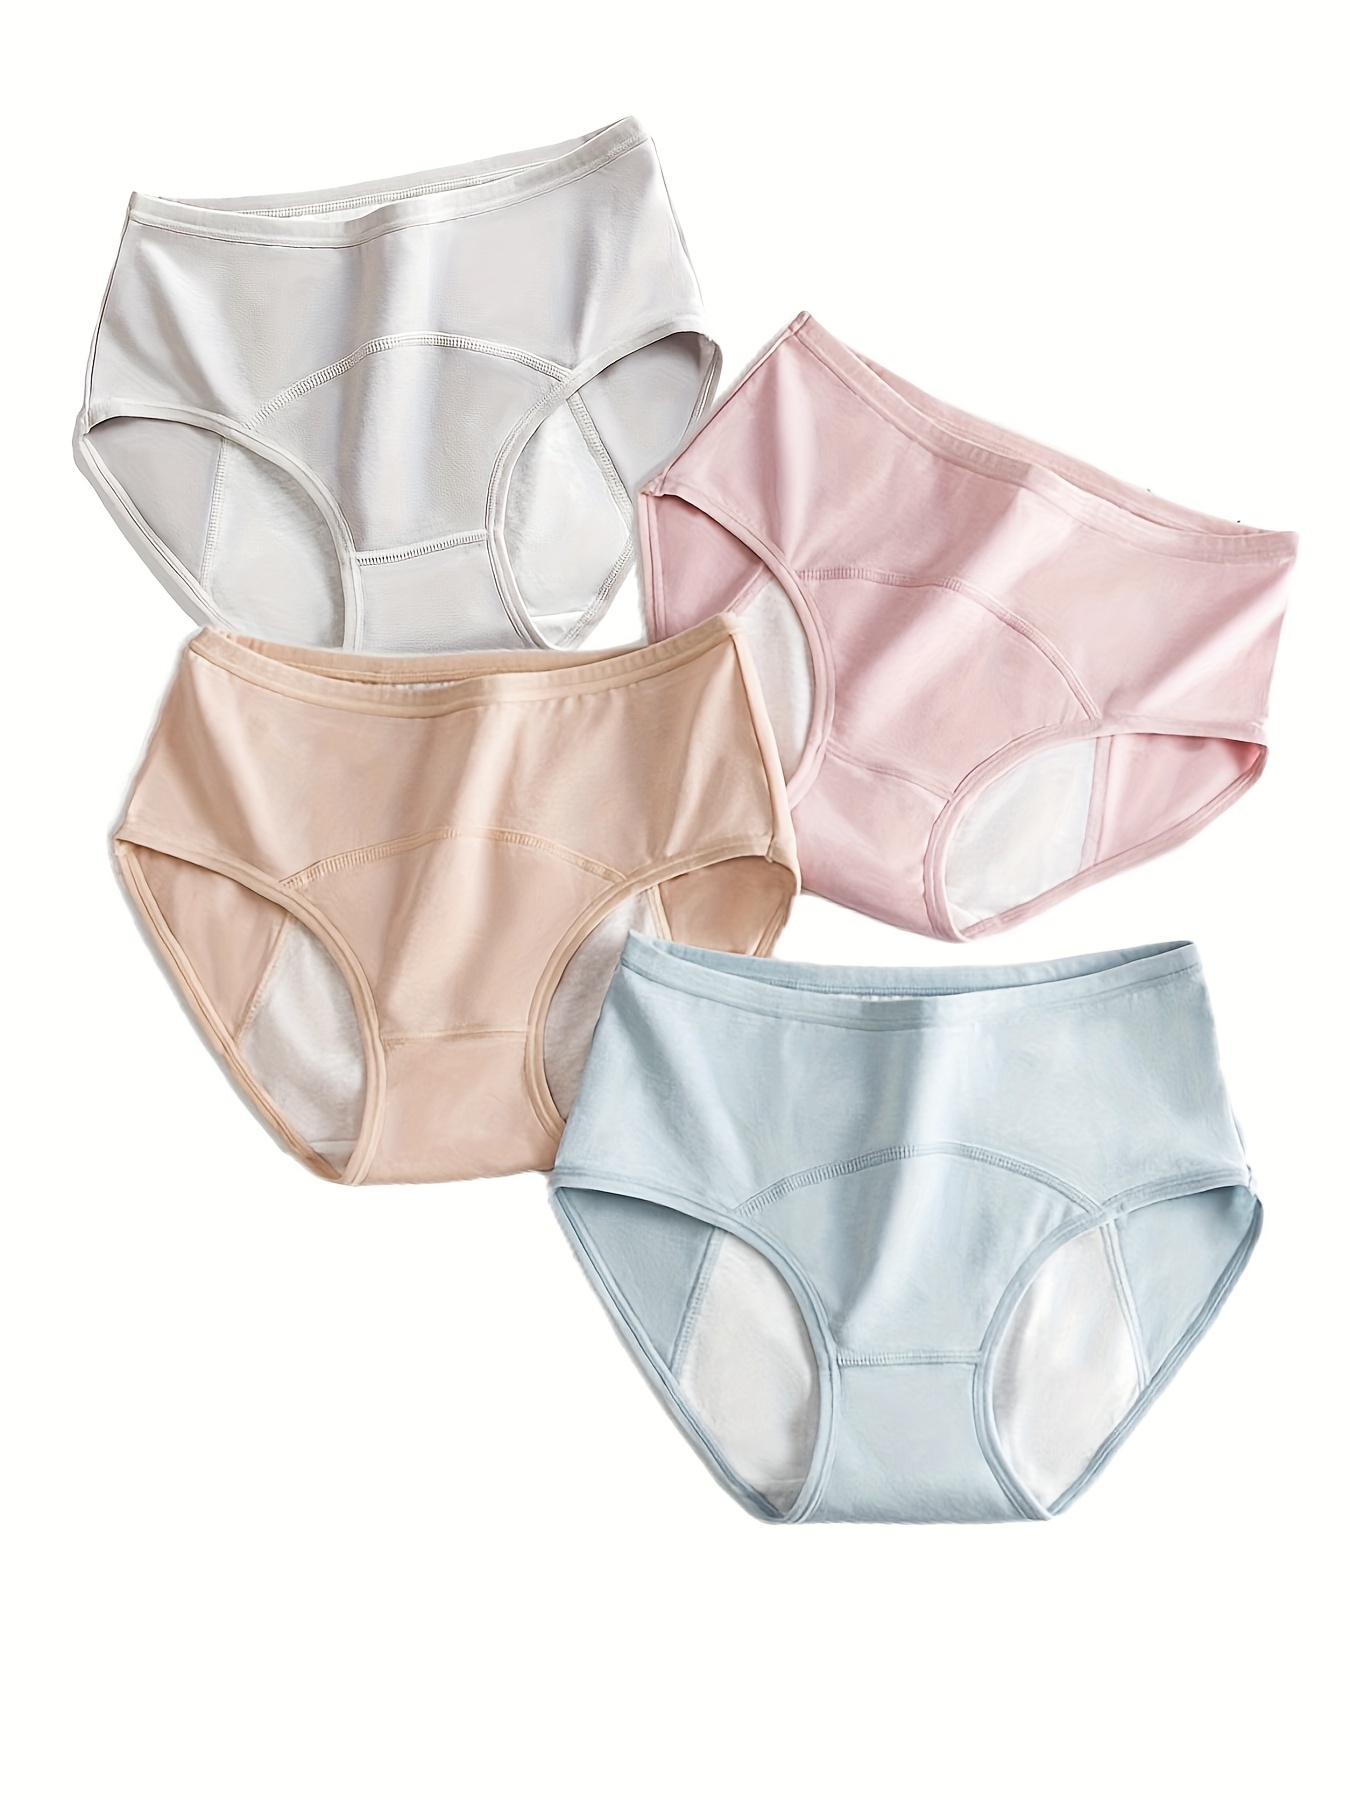 Leakproof Underwear for Women Incontinence, Cotton Briefs